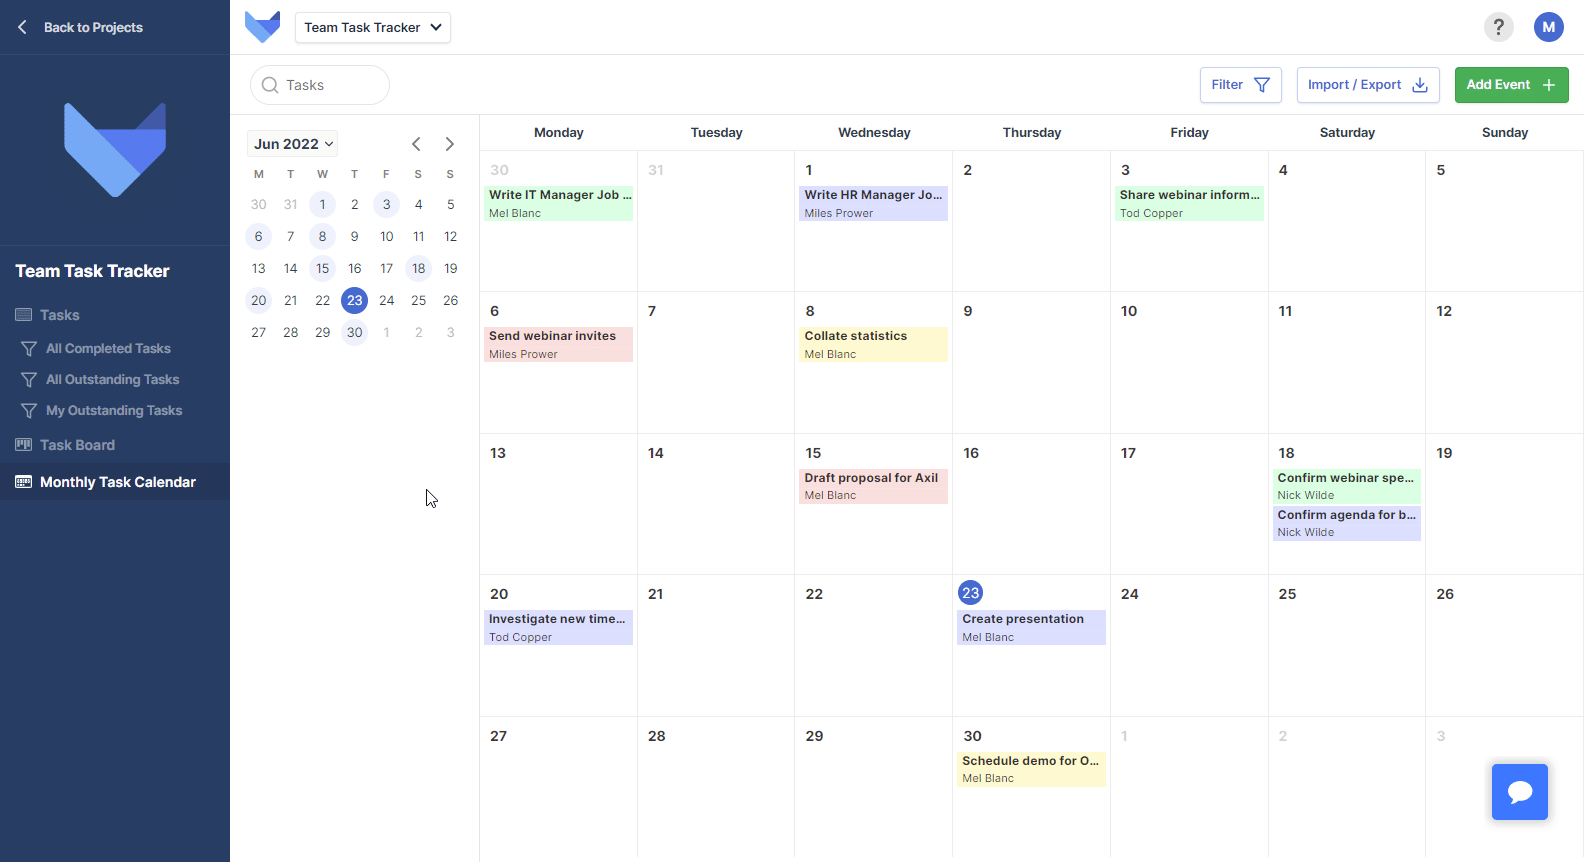 Editing a Calendar Event